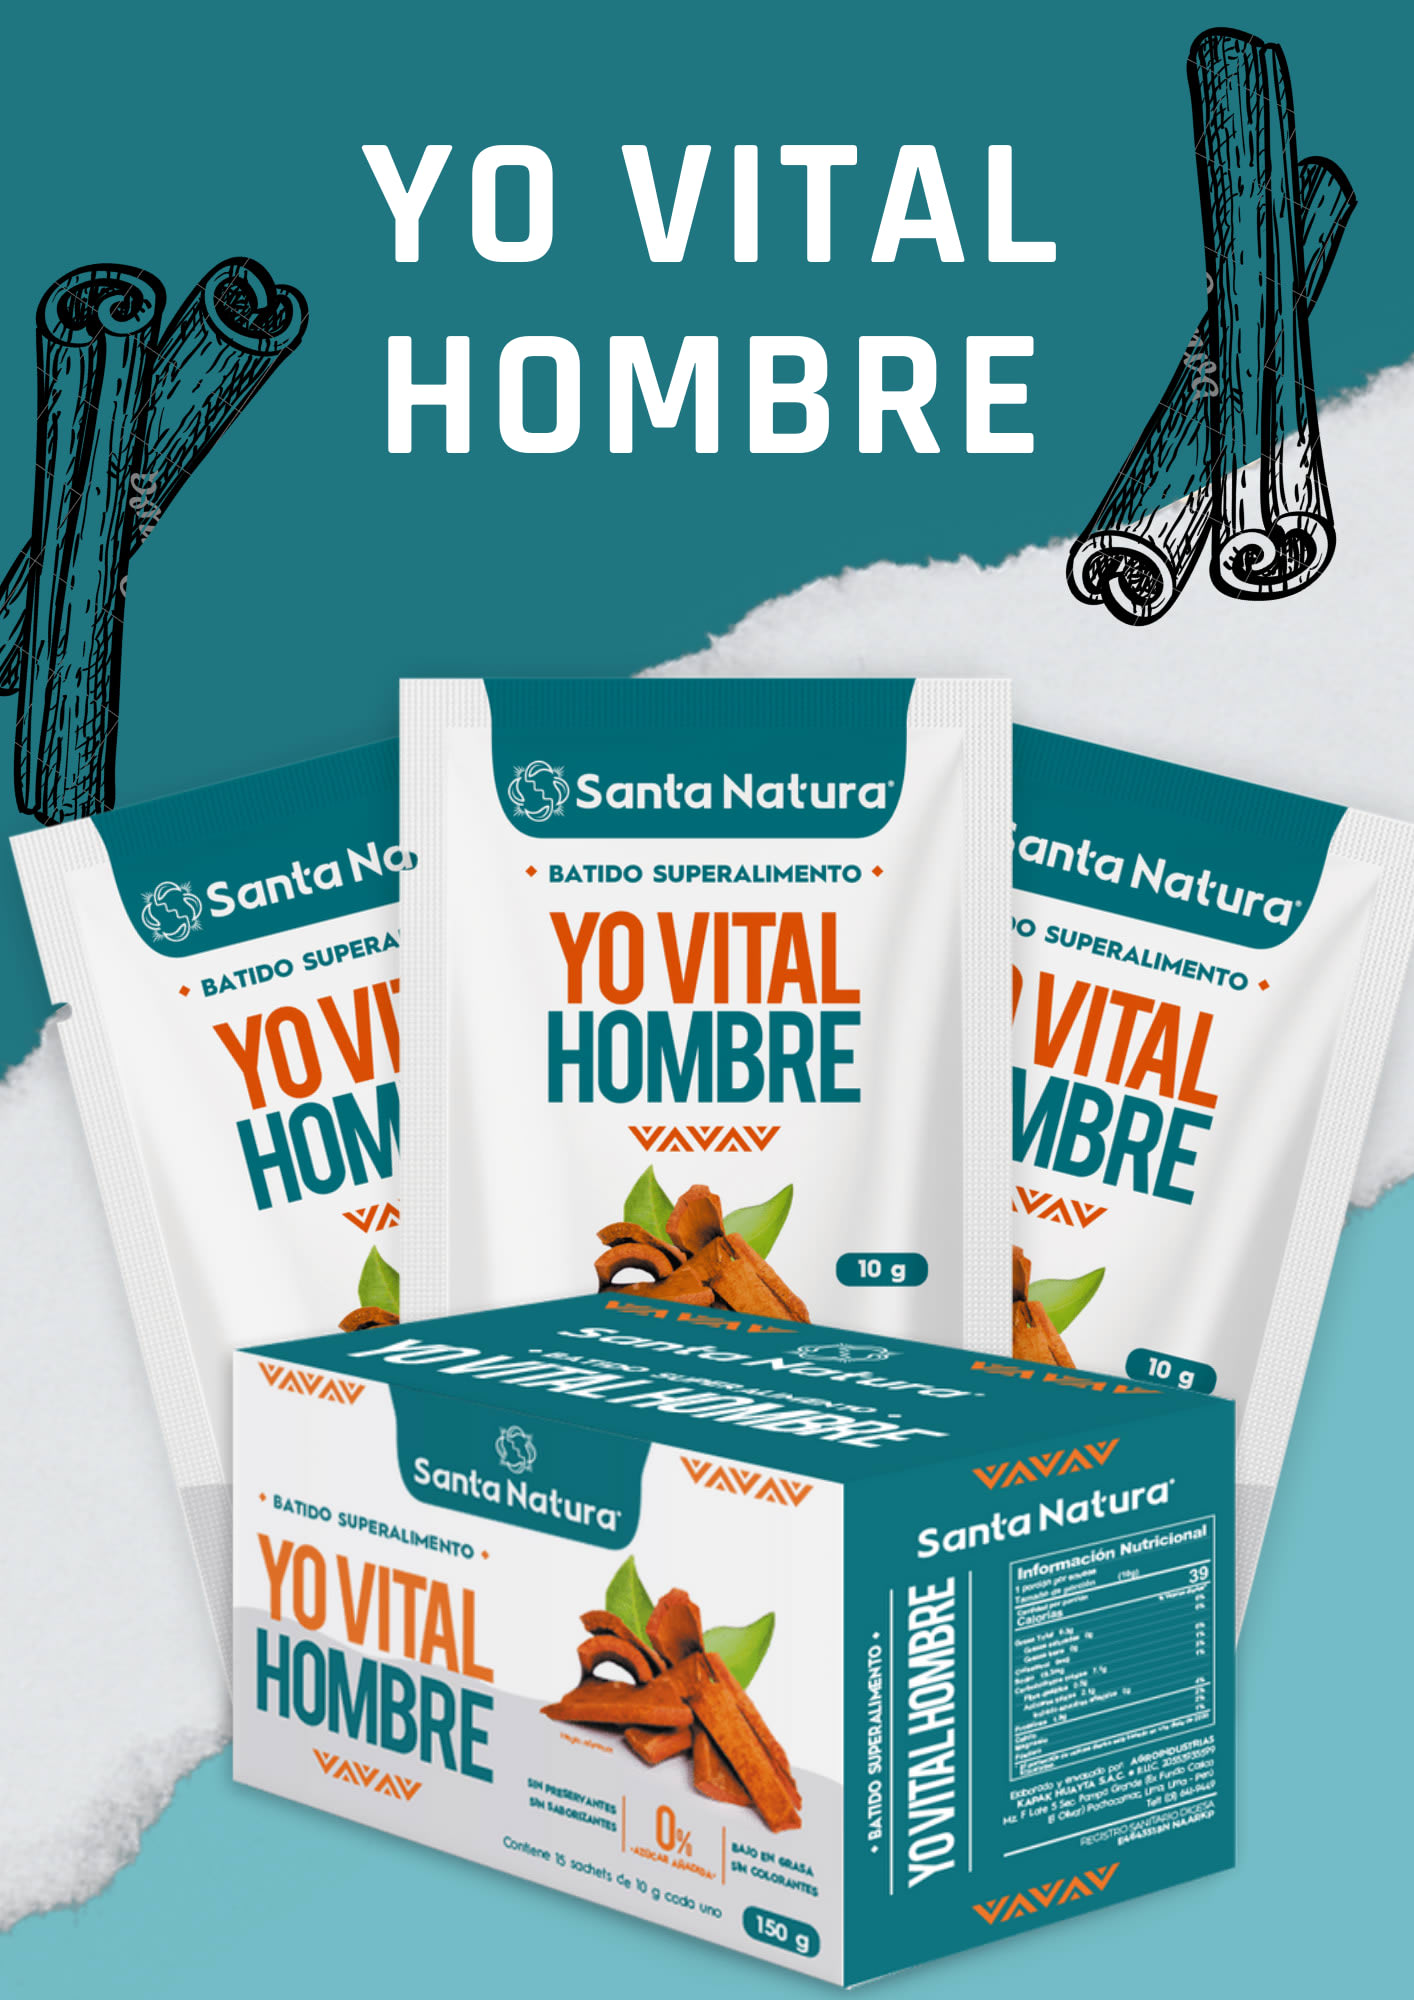 YO VITAL HOMBRE - Productos naturales - CDR Santa Natura San Juan de  Lurigancho | Lima